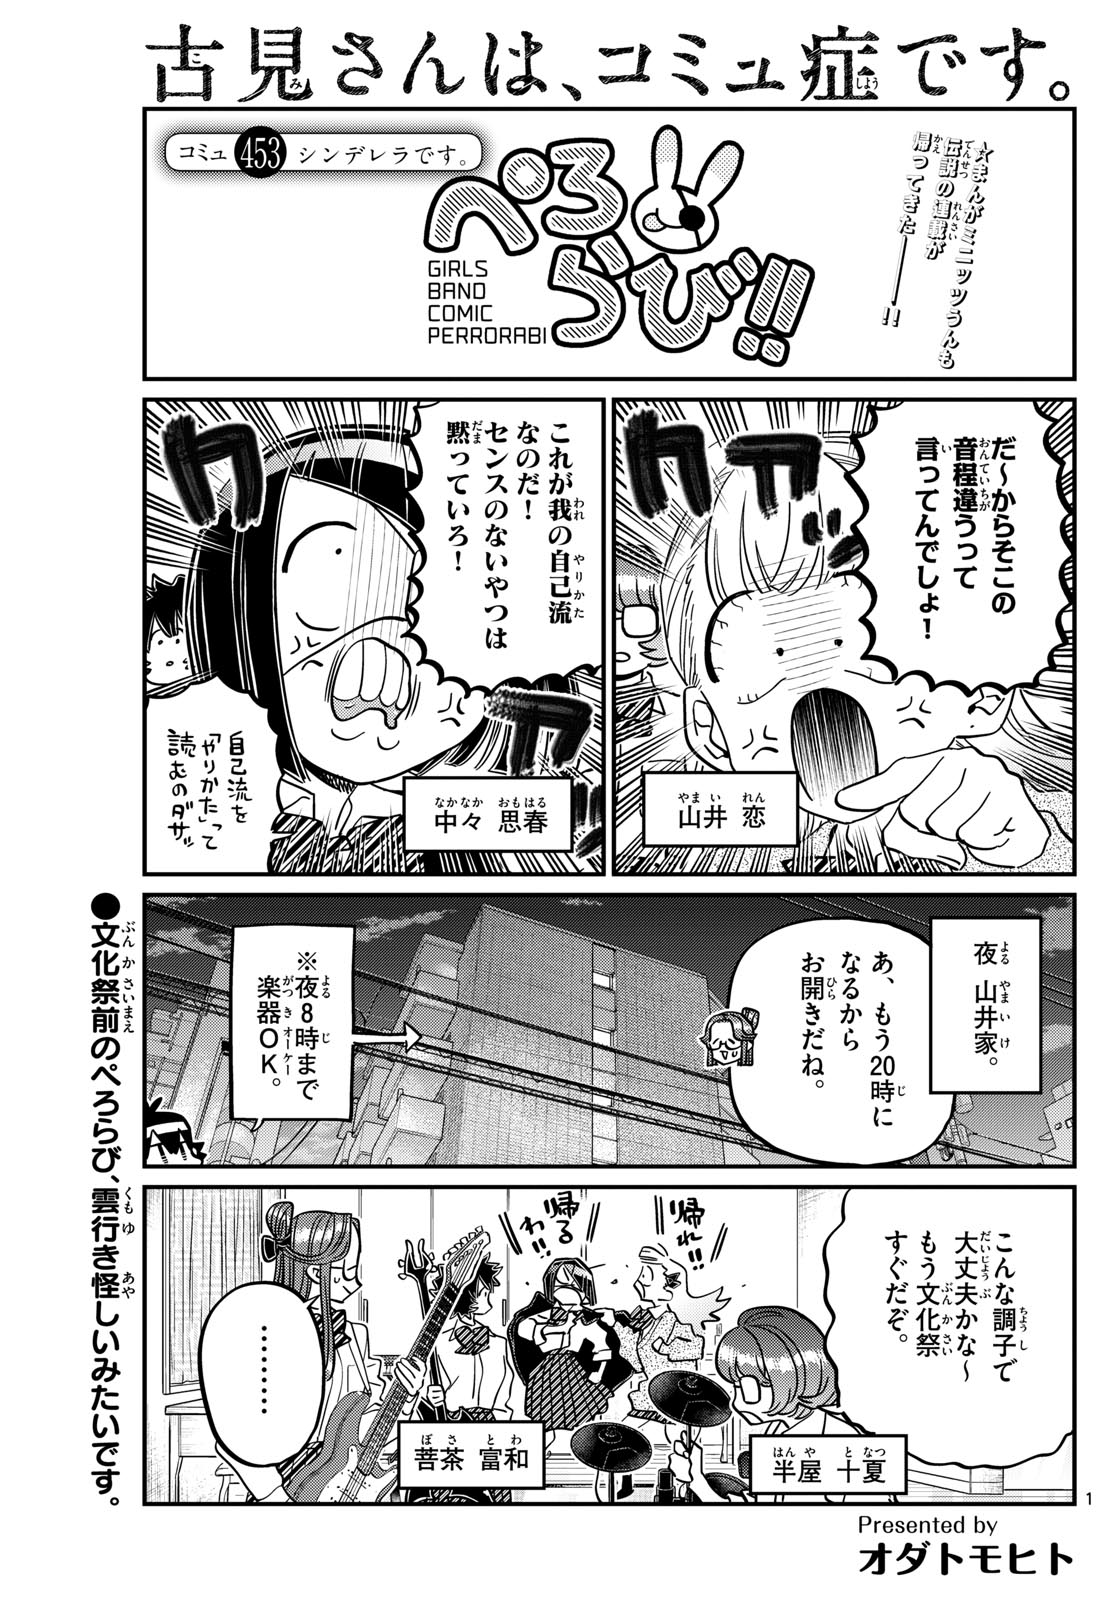 Komi-san wa Komyushou Desu - Chapter 453 - Page 1